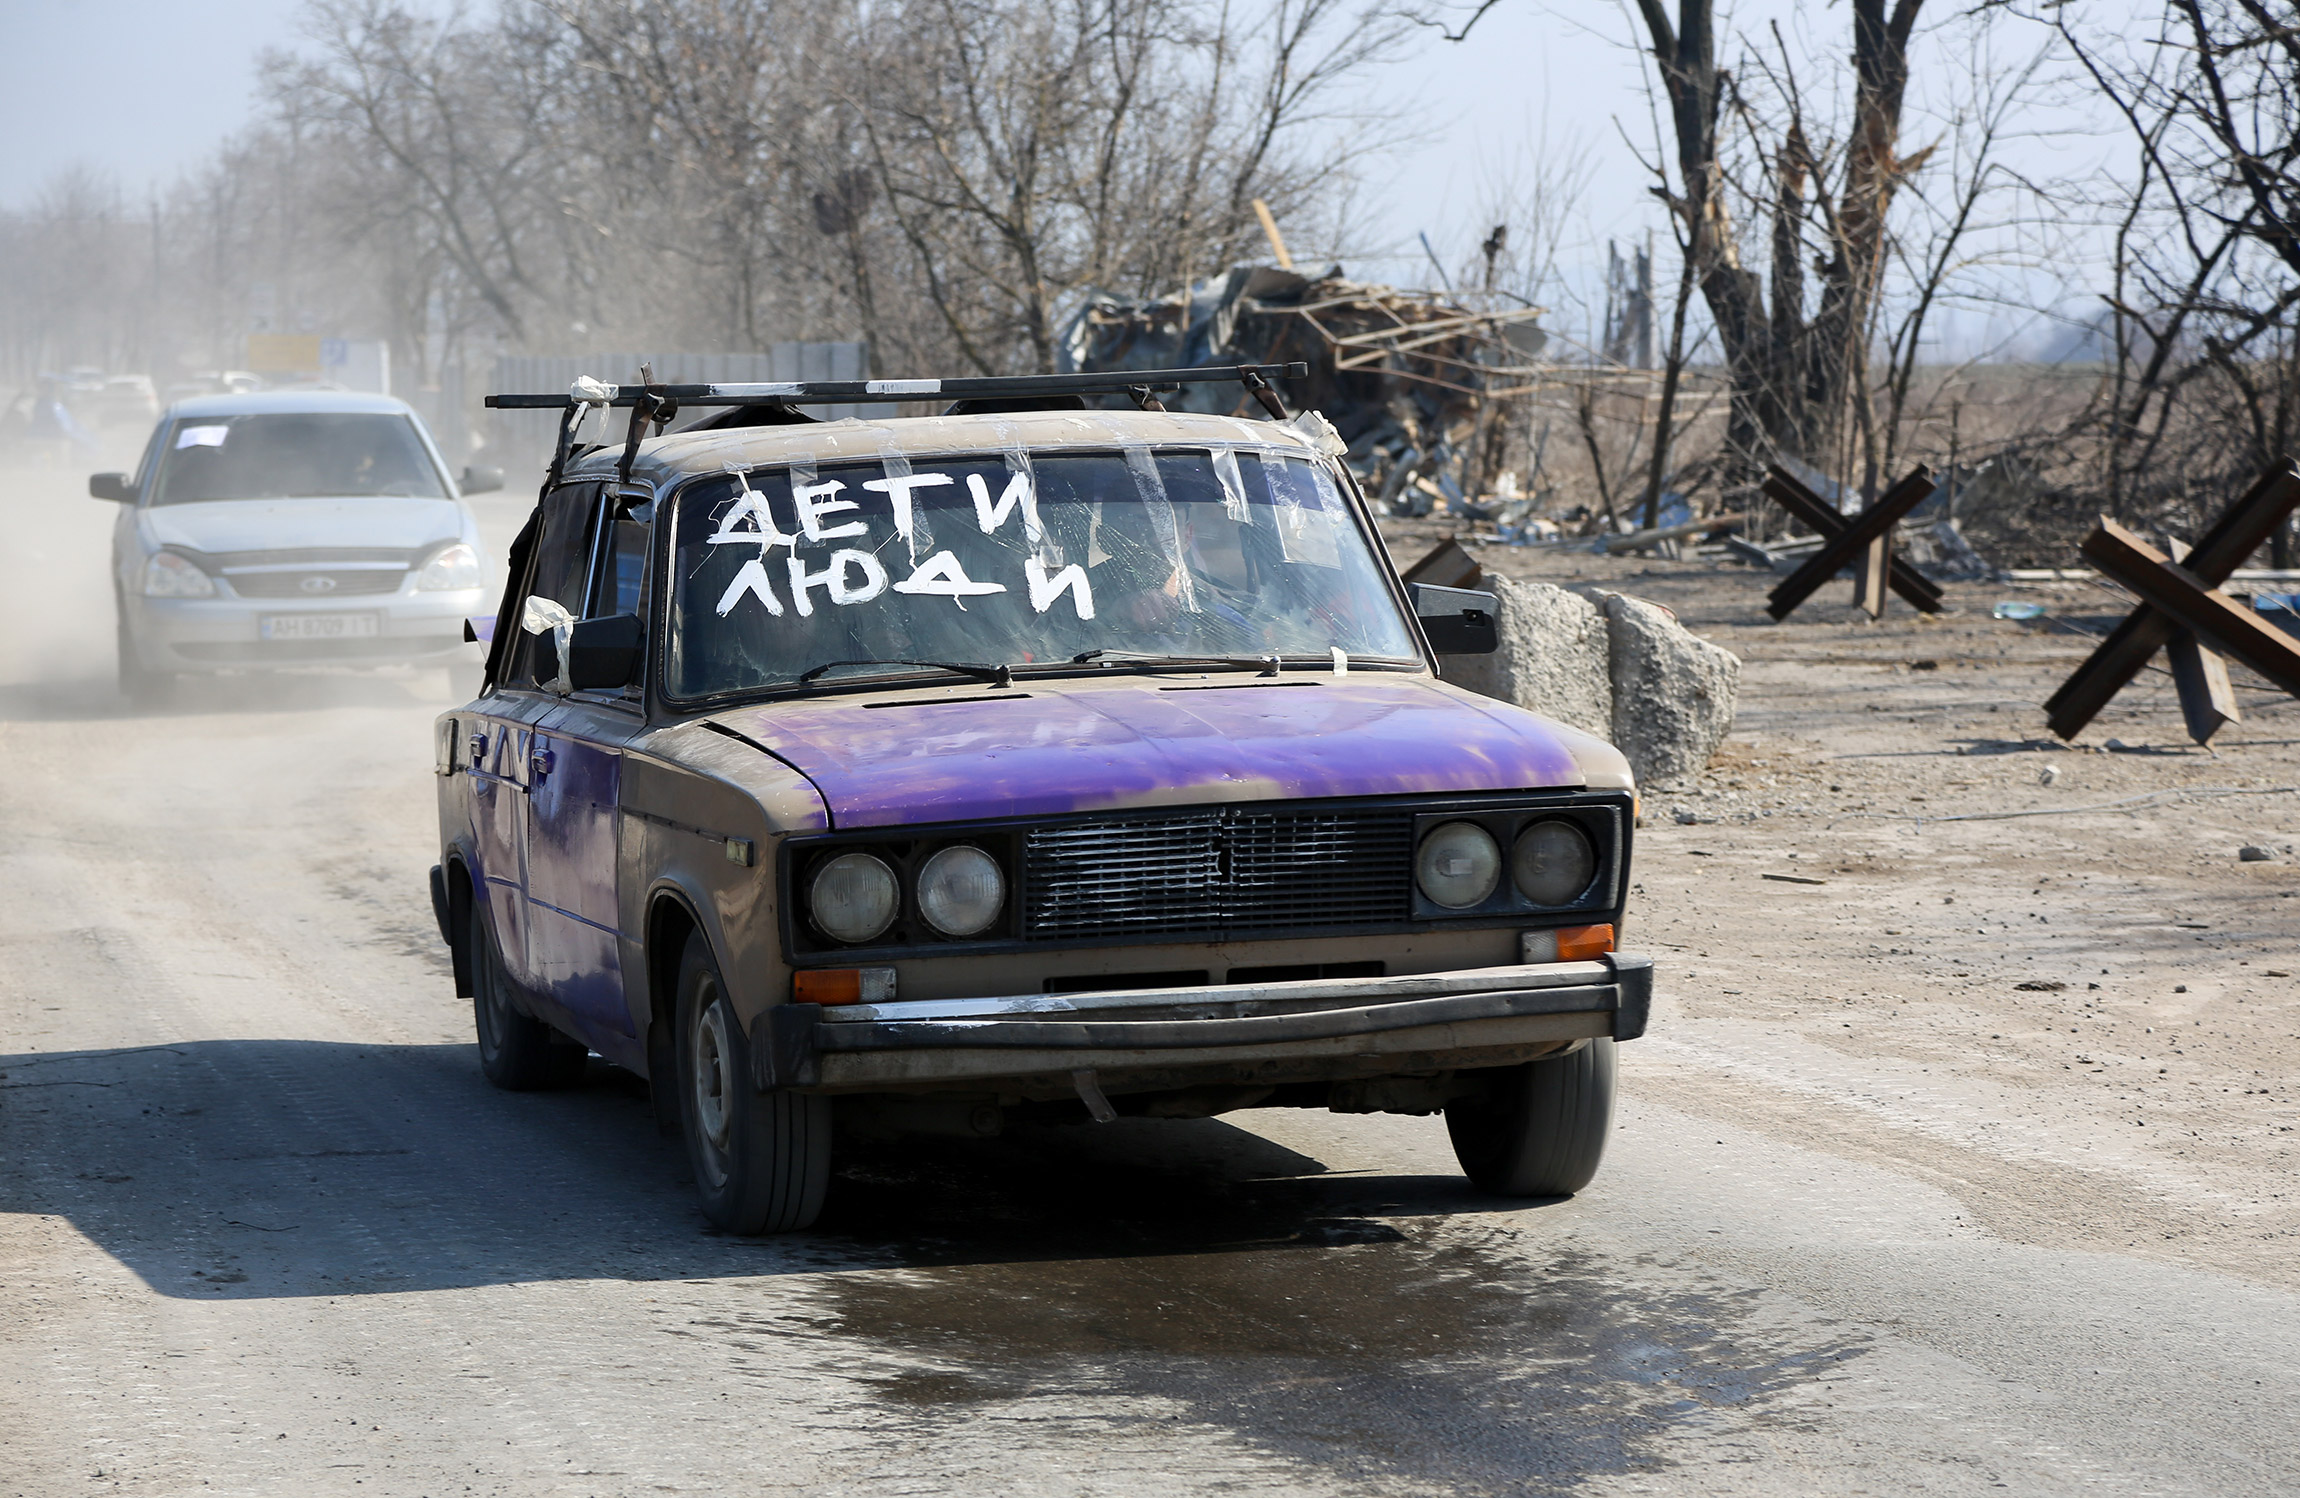 Местные жители во время эвакуации из города, 24 марта.

Люди подписывают машины, чтобы на дороге не оказаться под обстрелом